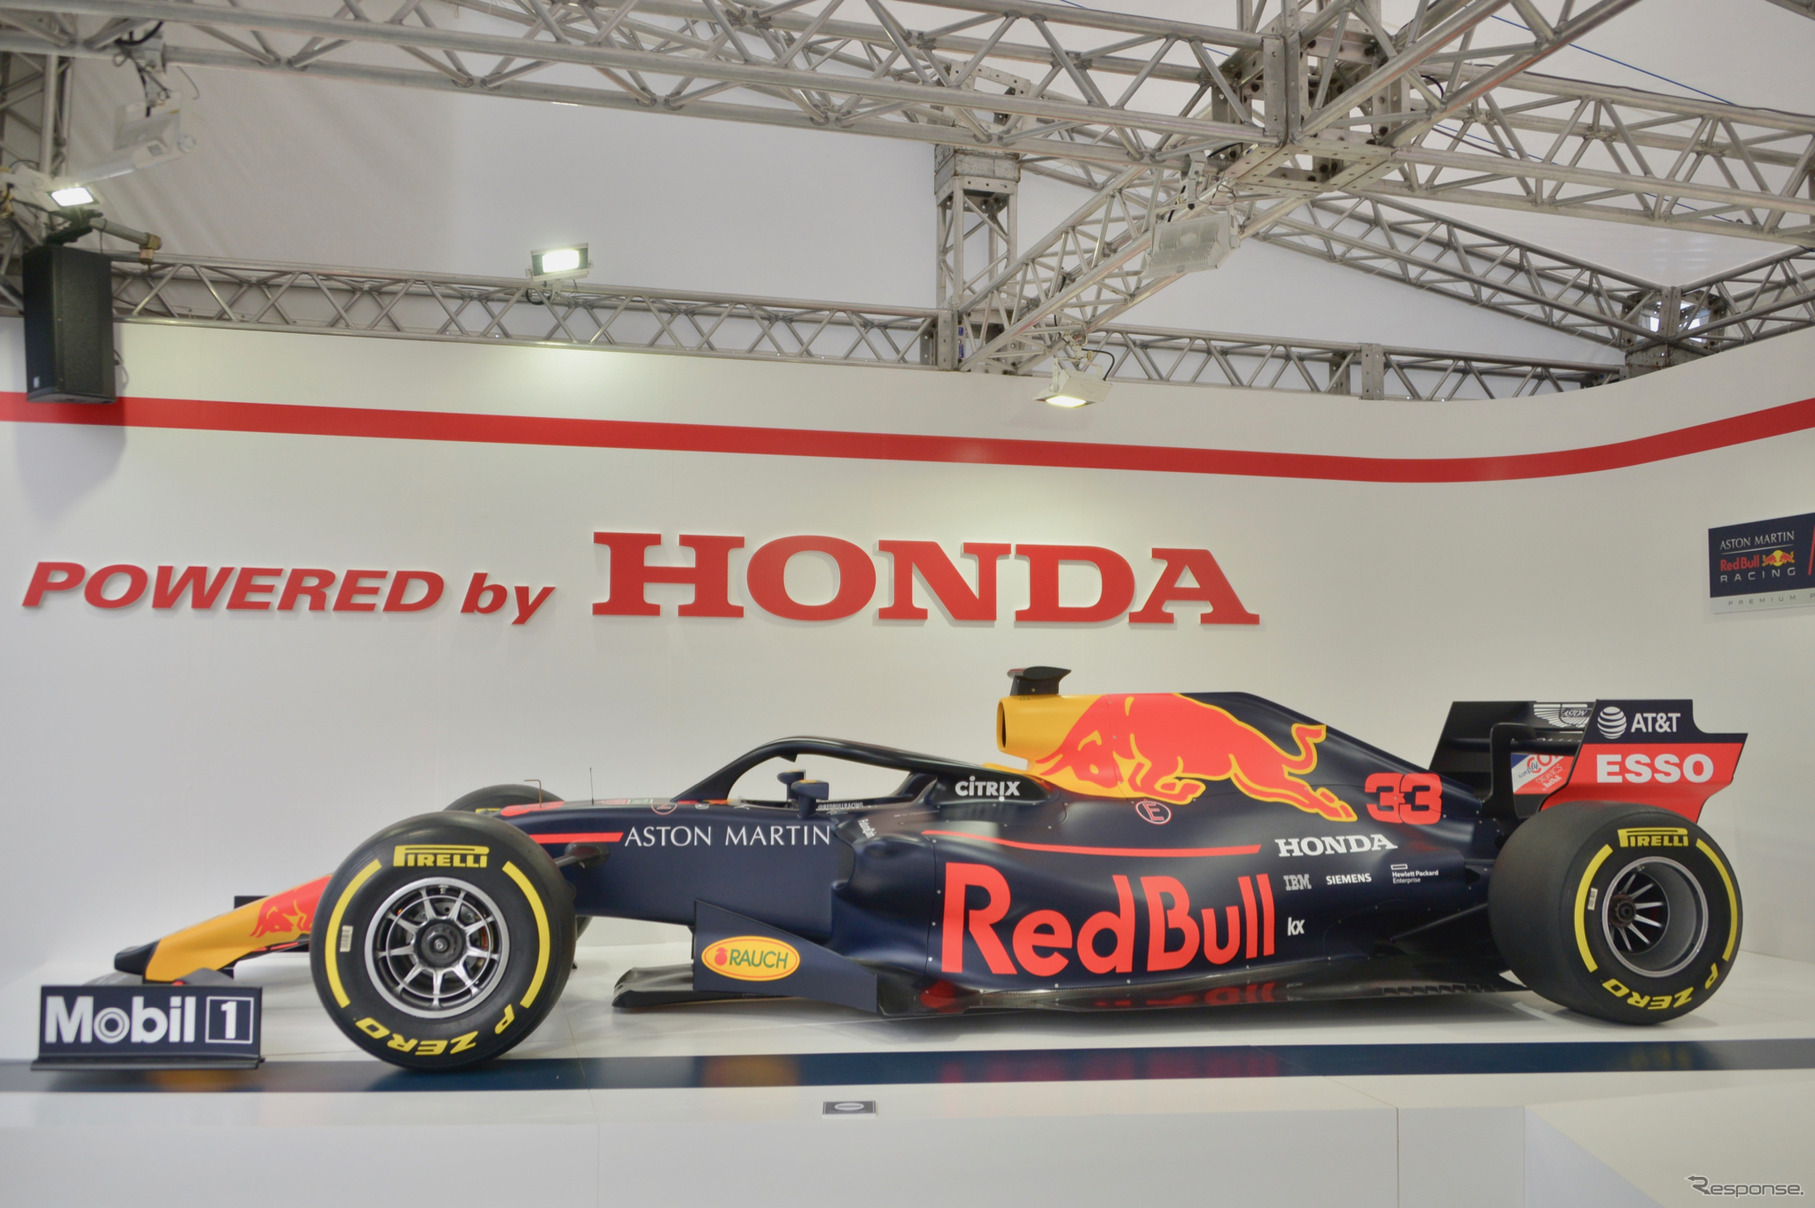 F1日本グランプリでホンダブースに展示中の車両